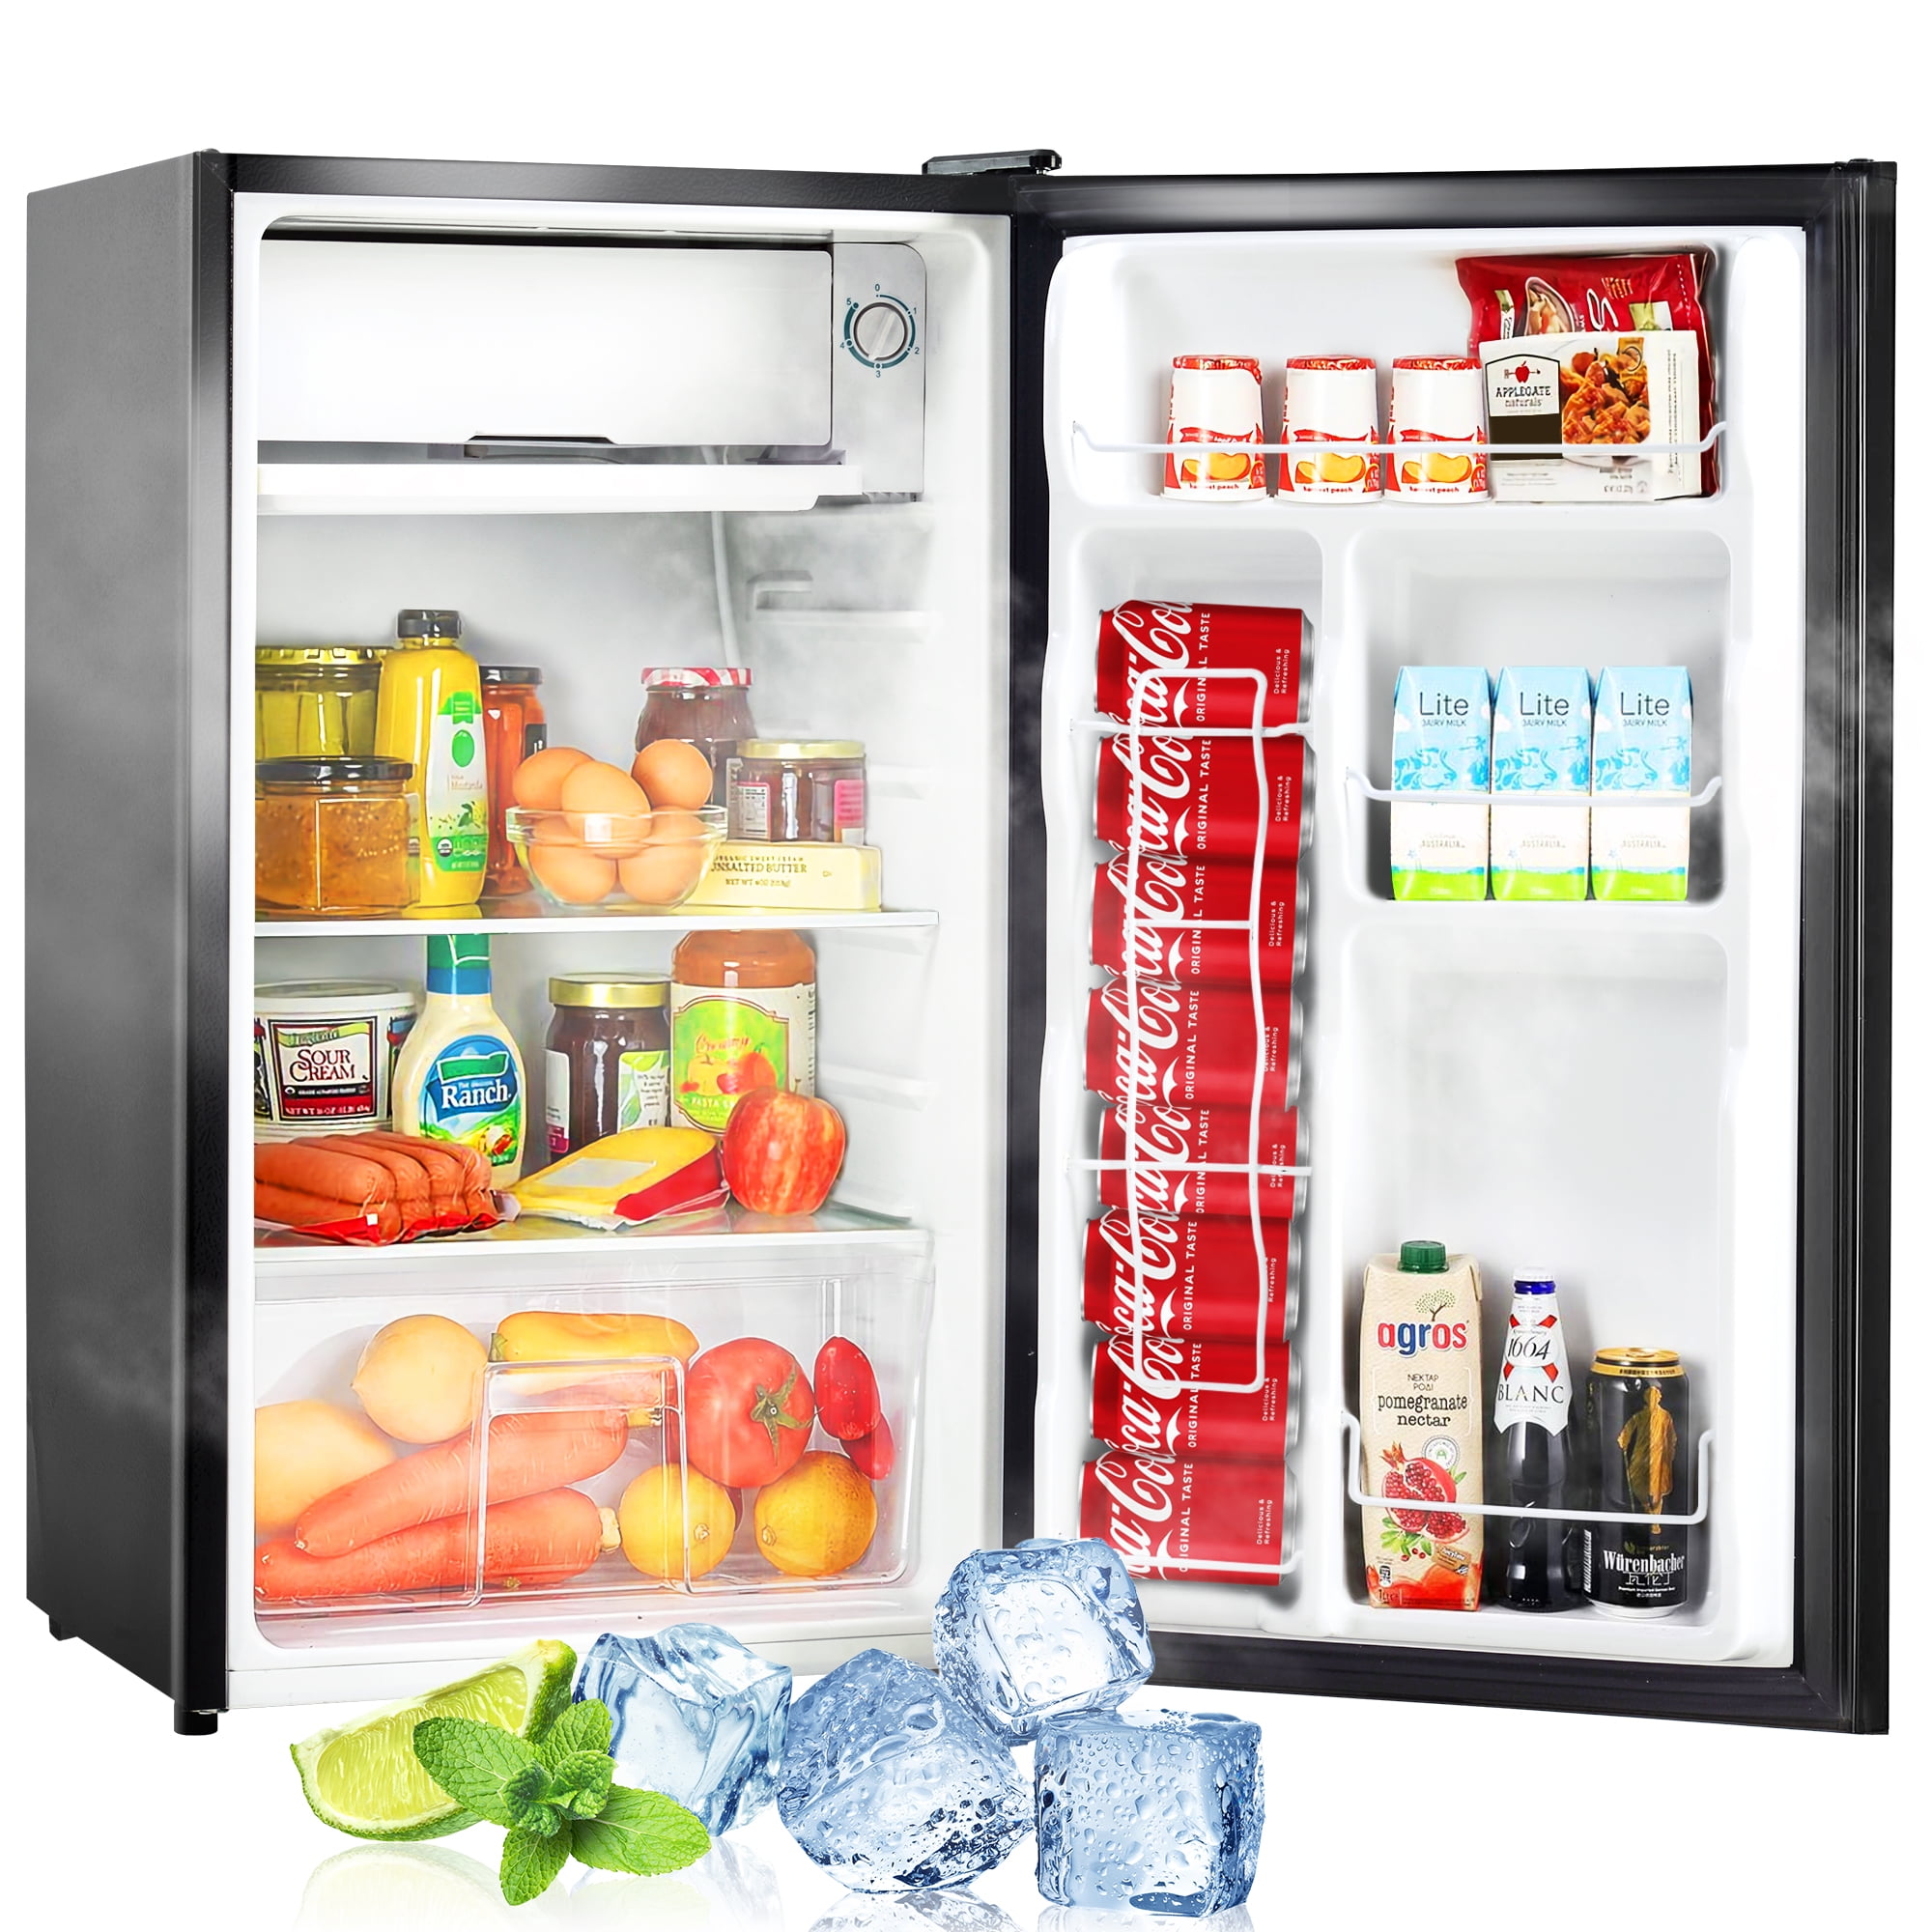 Mini Refrigerator Freezer 3.2 cu ft Fridge Compact Cooler Reversible Door Steel 